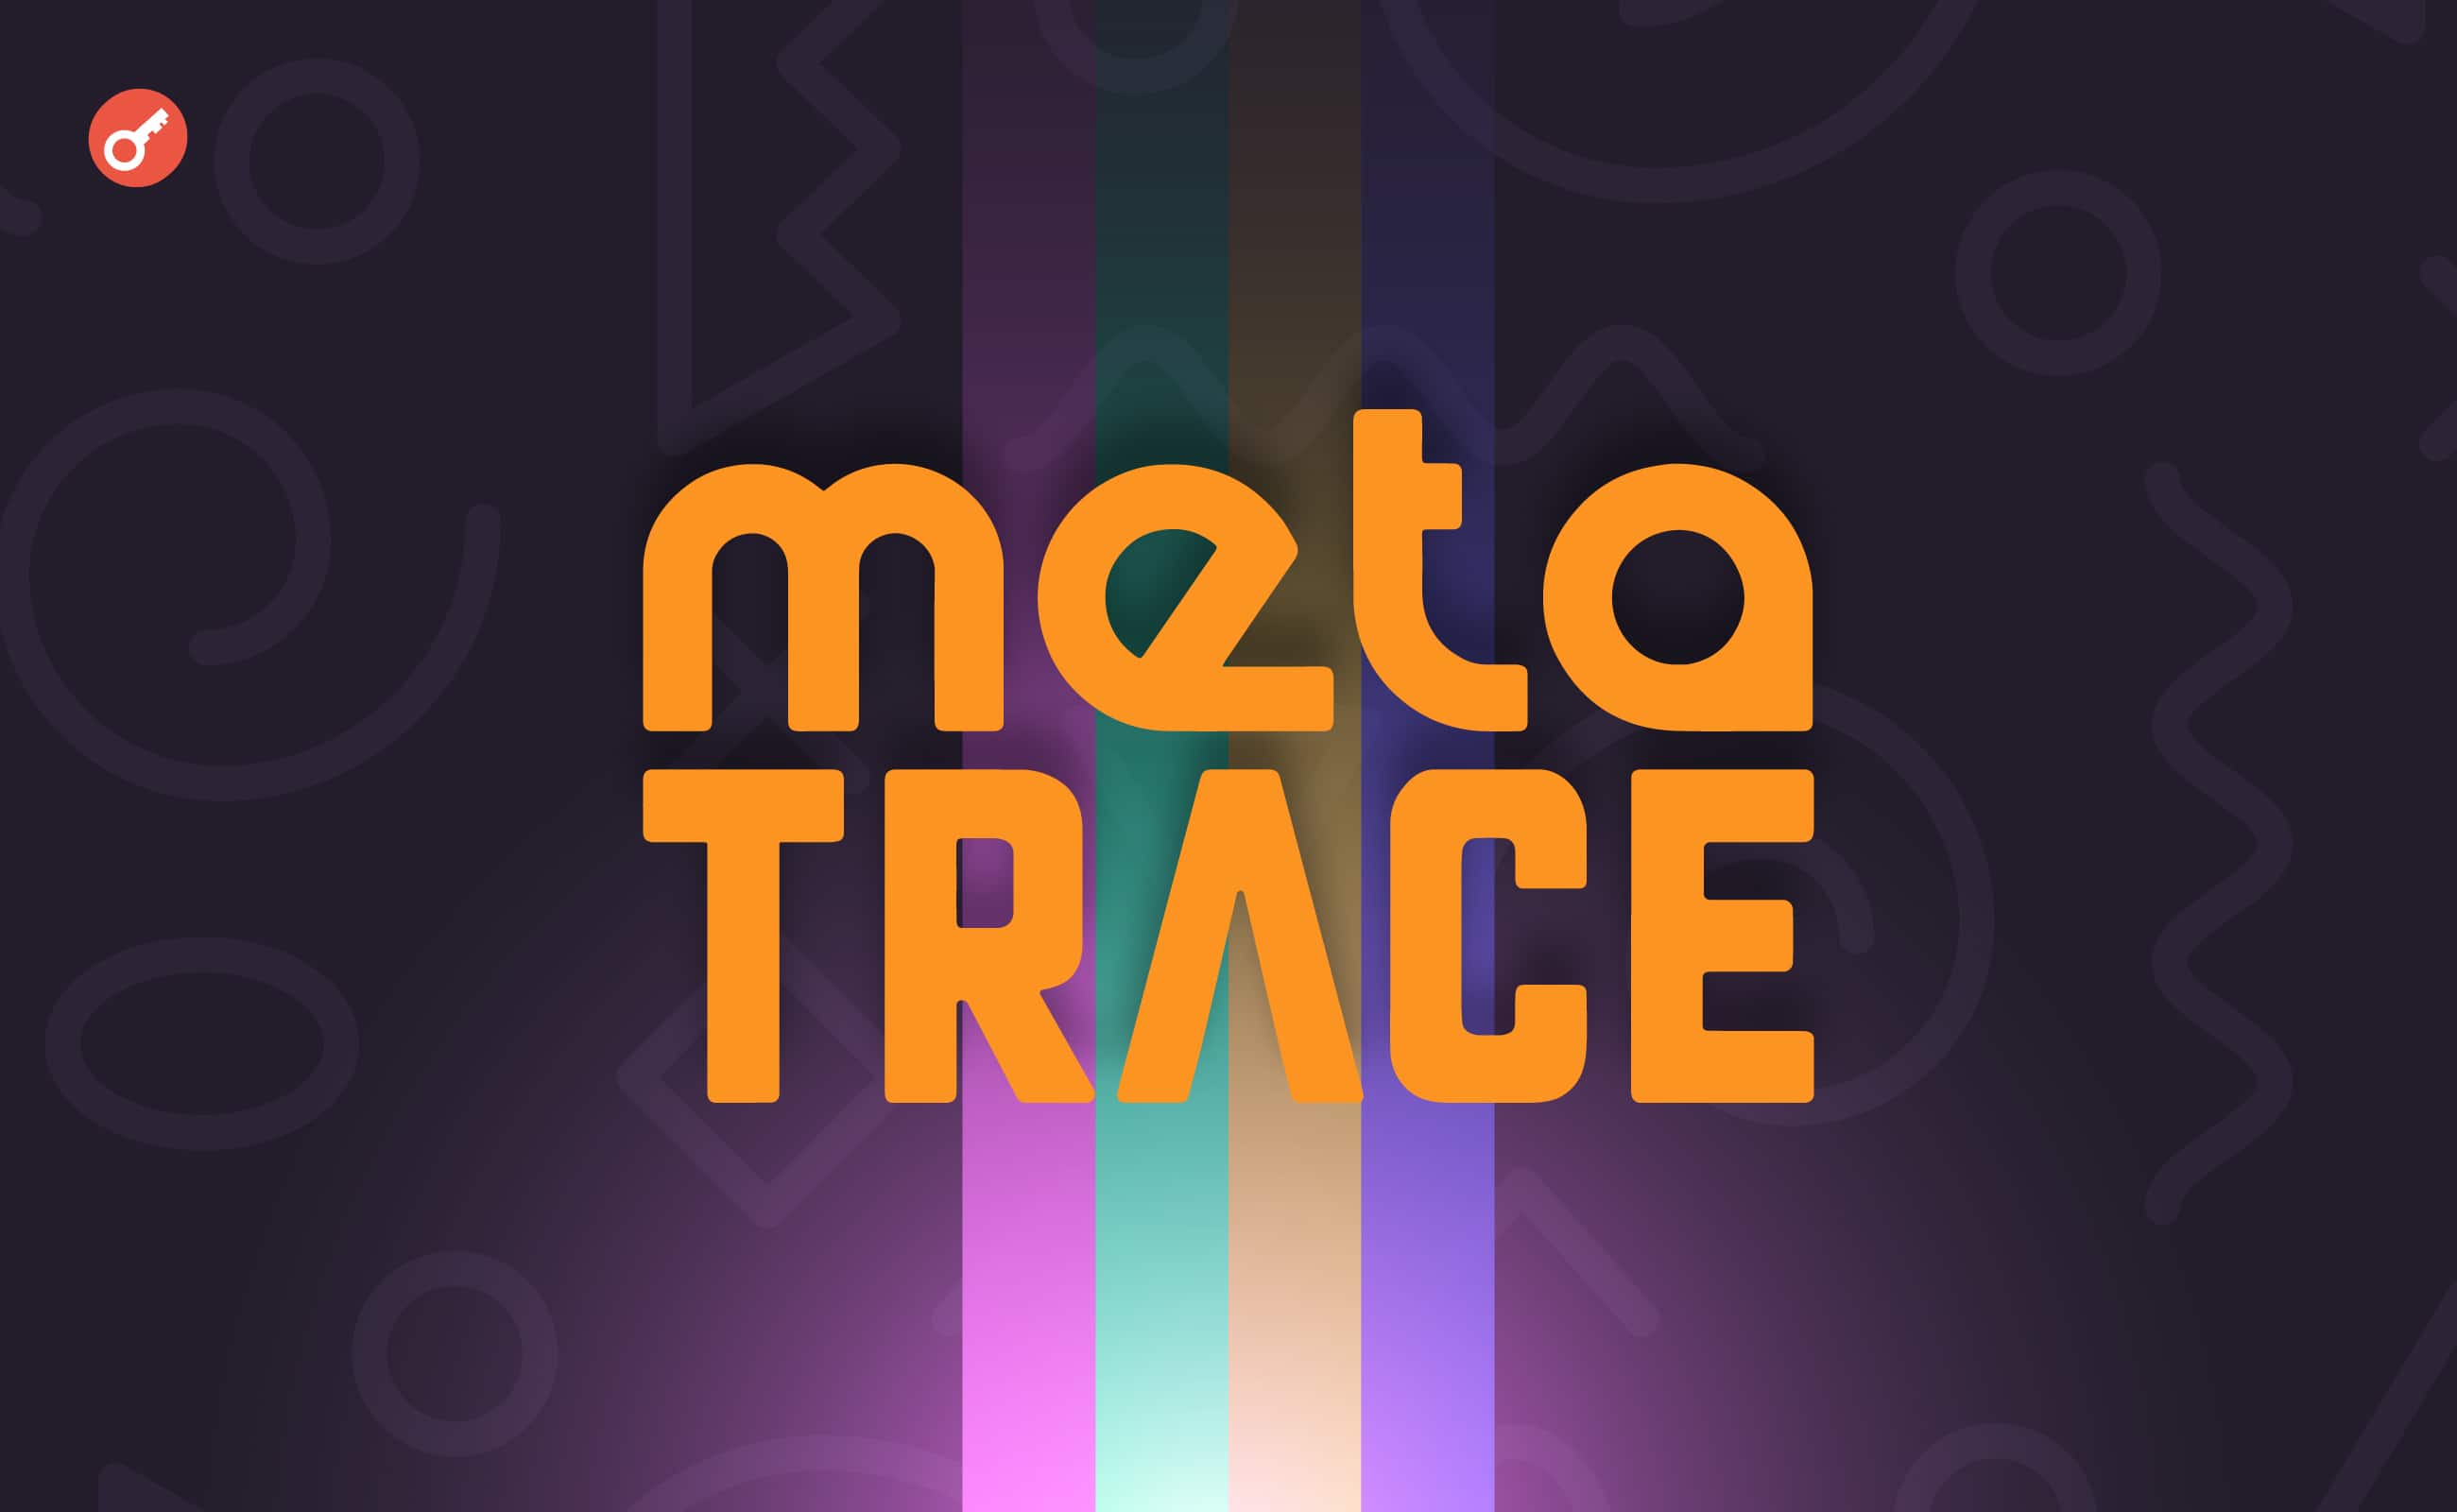 GameFi-проєкт MetaTrace отримав ліцензію в ОАЕ і відкрив раунд інвестицій на $25 млн. Головний колаж новини.